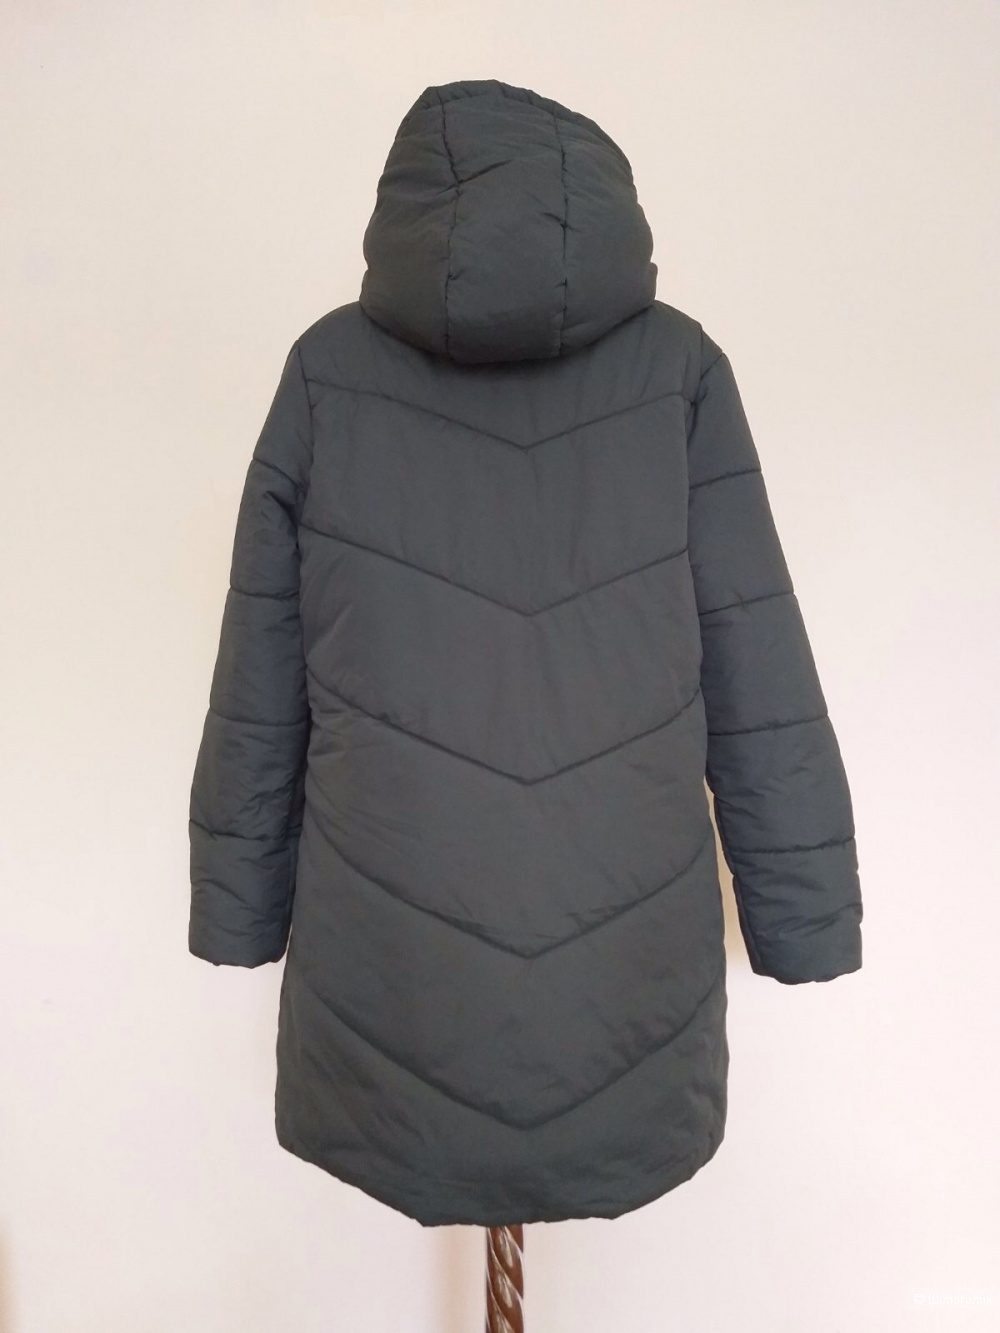 Пальто Befree, размер S, на 44-46-48